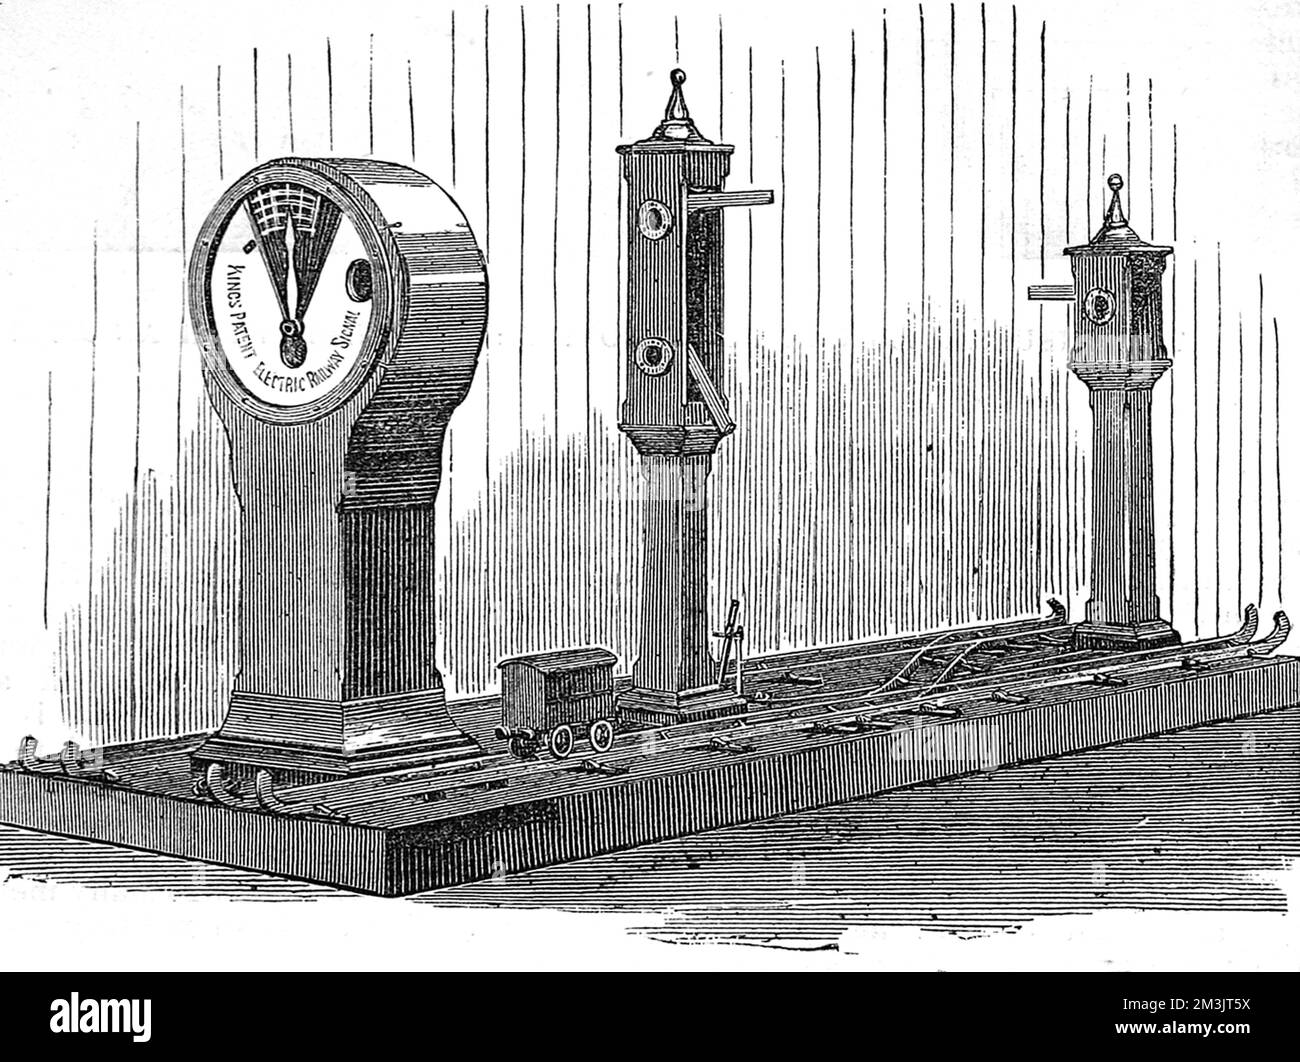 Eine Vorlesung im Charterhouse, London, über Stephen Grays Entdeckungen in der Elektrizität. Anfang des achtzehnten Jahrhunderts zeigte Gray, dass Elektrizitätsladungen von einigen Materialien über Entfernungen von bis zu 765 Metern geleitet werden konnten, während andere überhaupt keinen Strom leiteten. Schließlich war er in der Lage, Ladungen durch 88 Meter Draht zu senden, der auf Seidenfäden aufgehängt war, um ein Elektroskop zu bedienen - ein Instrument, das zur Erkennung statischer Elektrizität verwendet wurde. Durch das Senden eines elektrischen Signals von einem Ort zum anderen hat Gray das Grundprinzip des elektrischen Telegrafenschreibers etabliert. Stockfoto